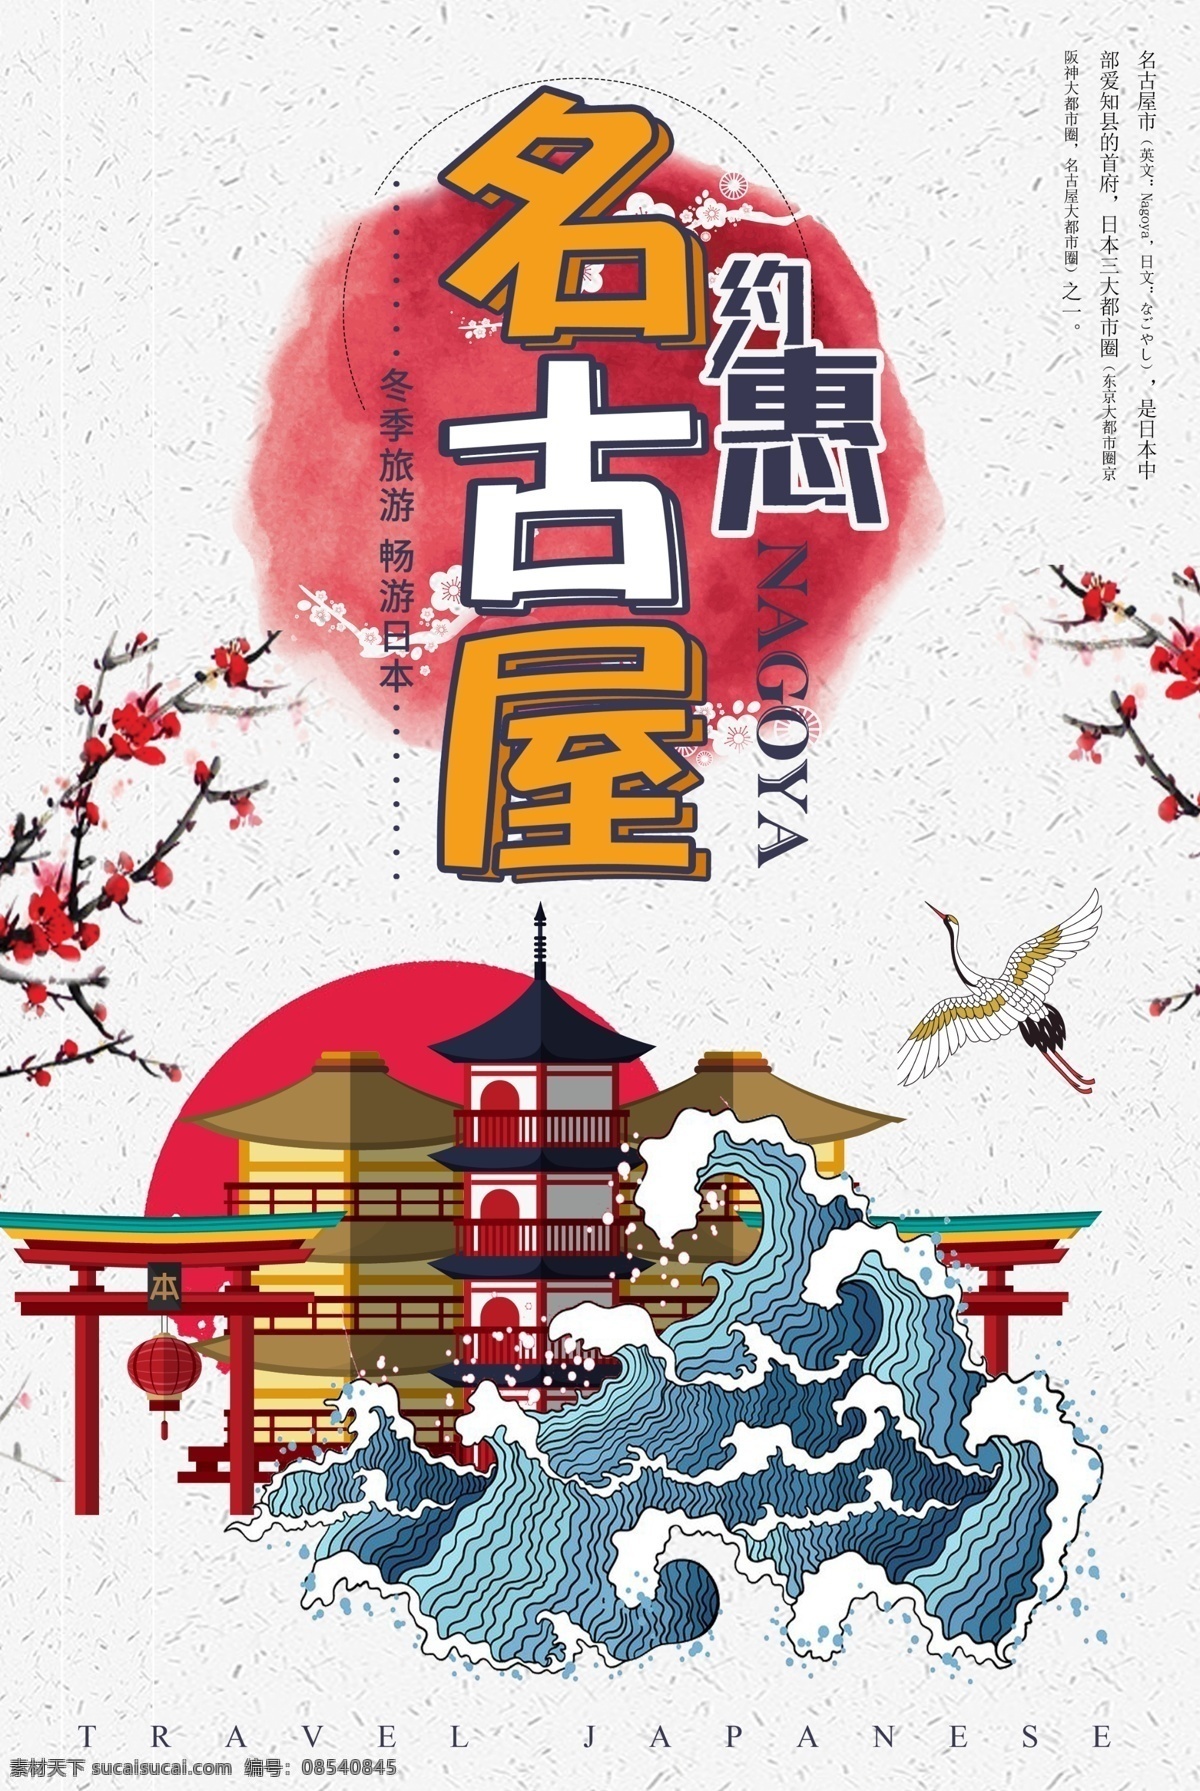 中国 风 日本 名古屋 旅游 日本海报 旅游海报 日本旅游 日式 和风 风情 海报 和风旅游海报 橙色 橙色创意海报 浅黄色 创意 季节性